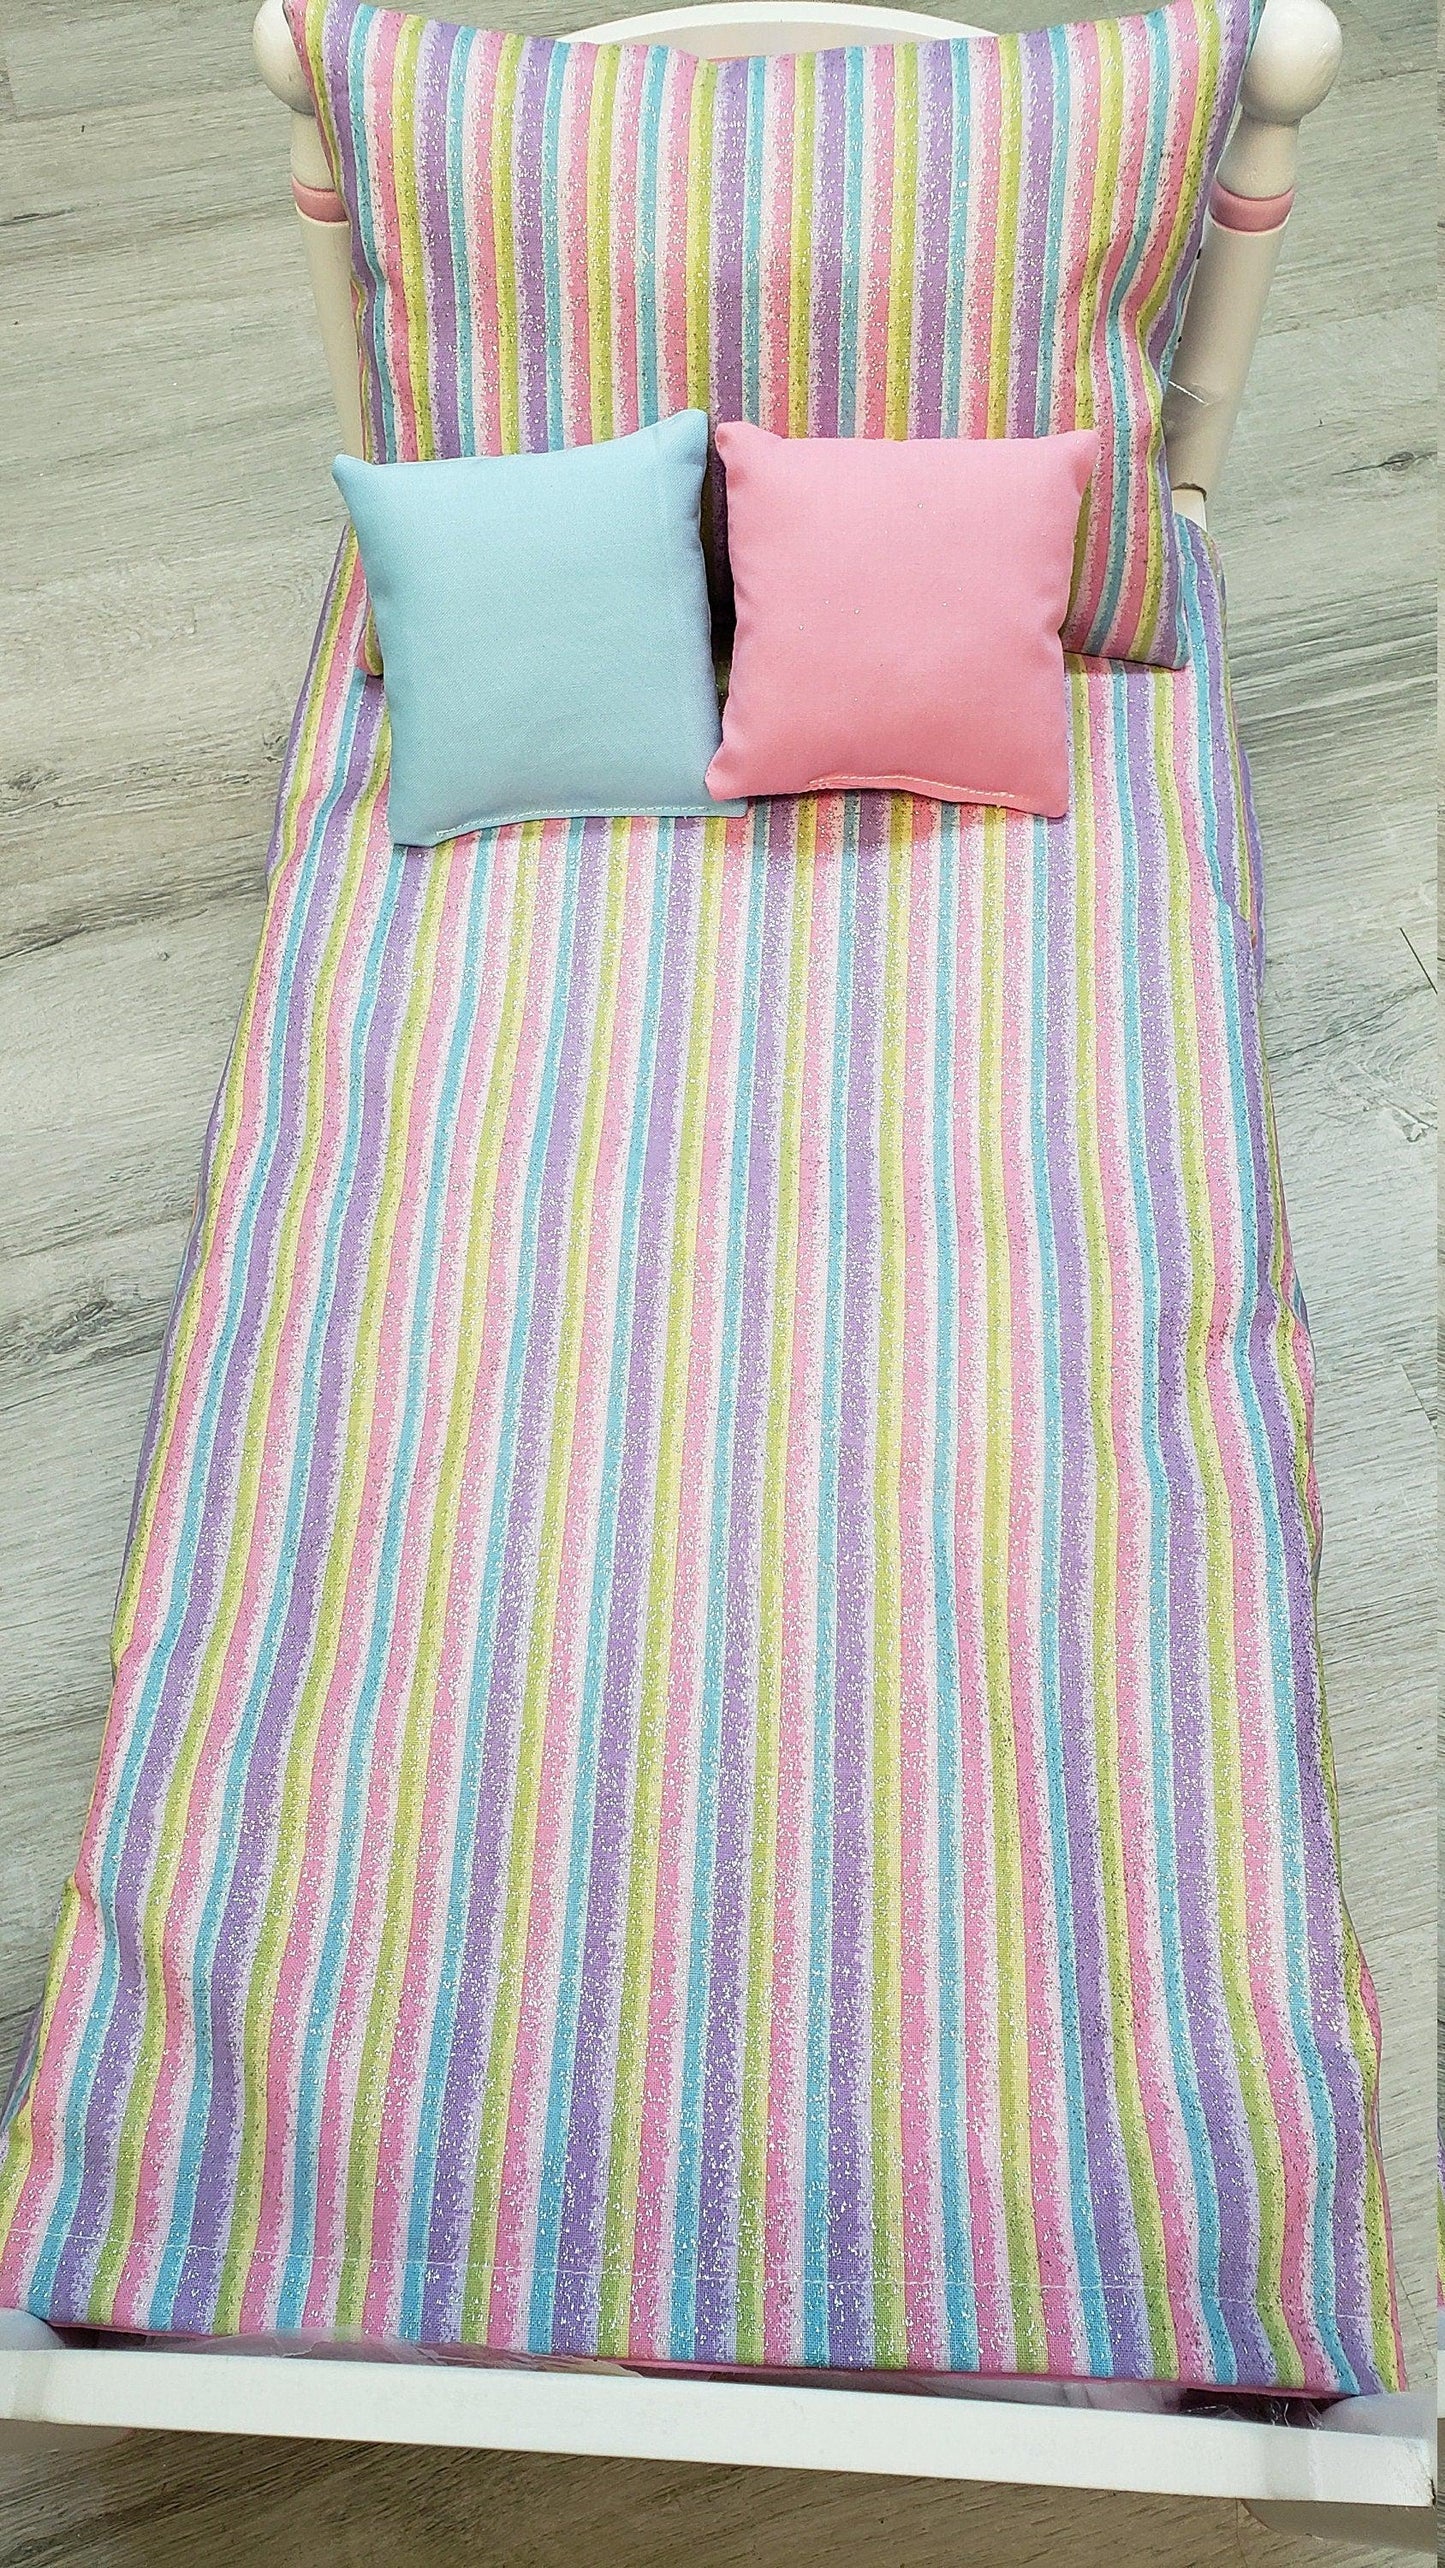 Bedding Set for dolls | Bedding set for   doll | Rainbow 18 inches Doll Bedding Set | 18 inch doll bedding set